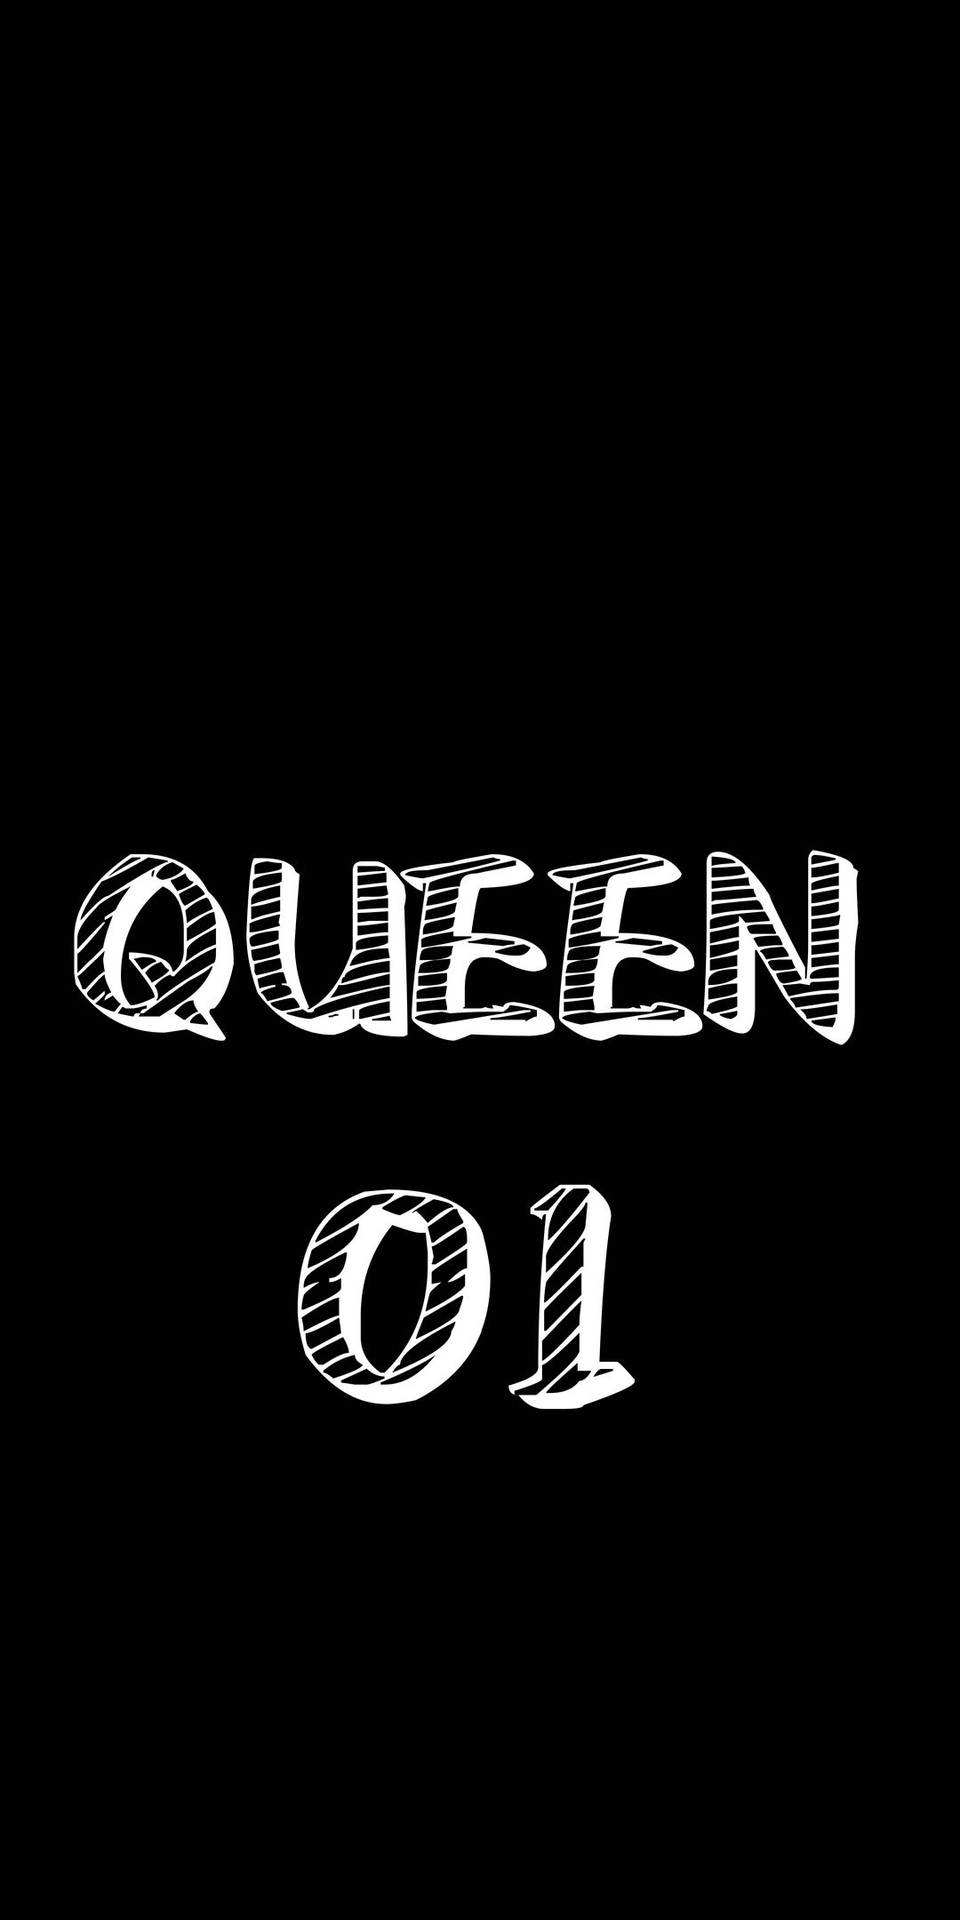 Black Queen 01 Background